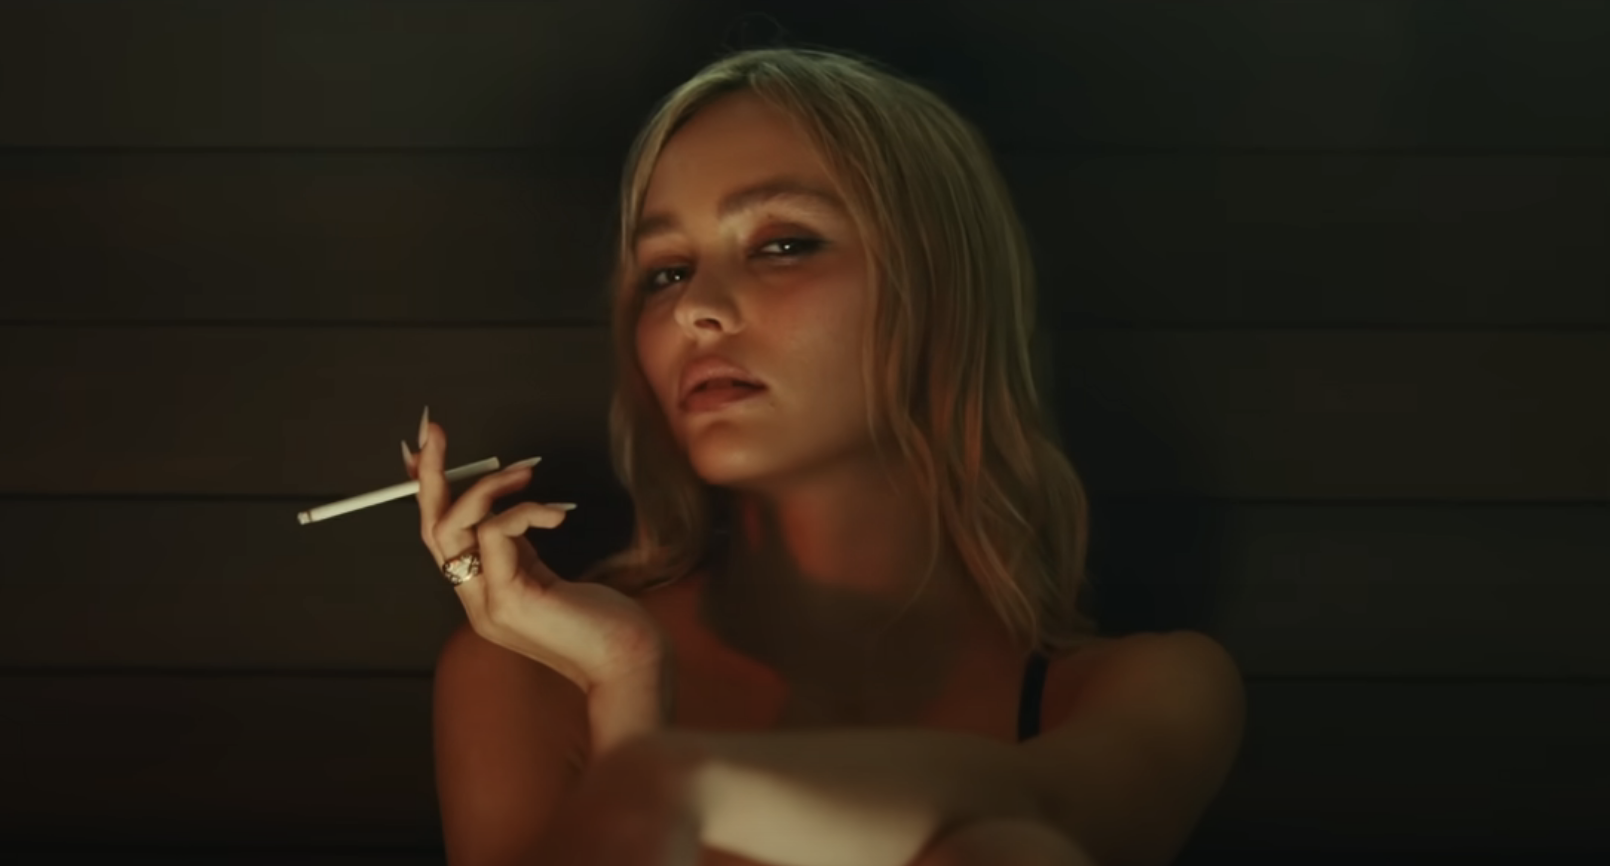 A close-up of Lily-Rose Depp smoking a cigarette